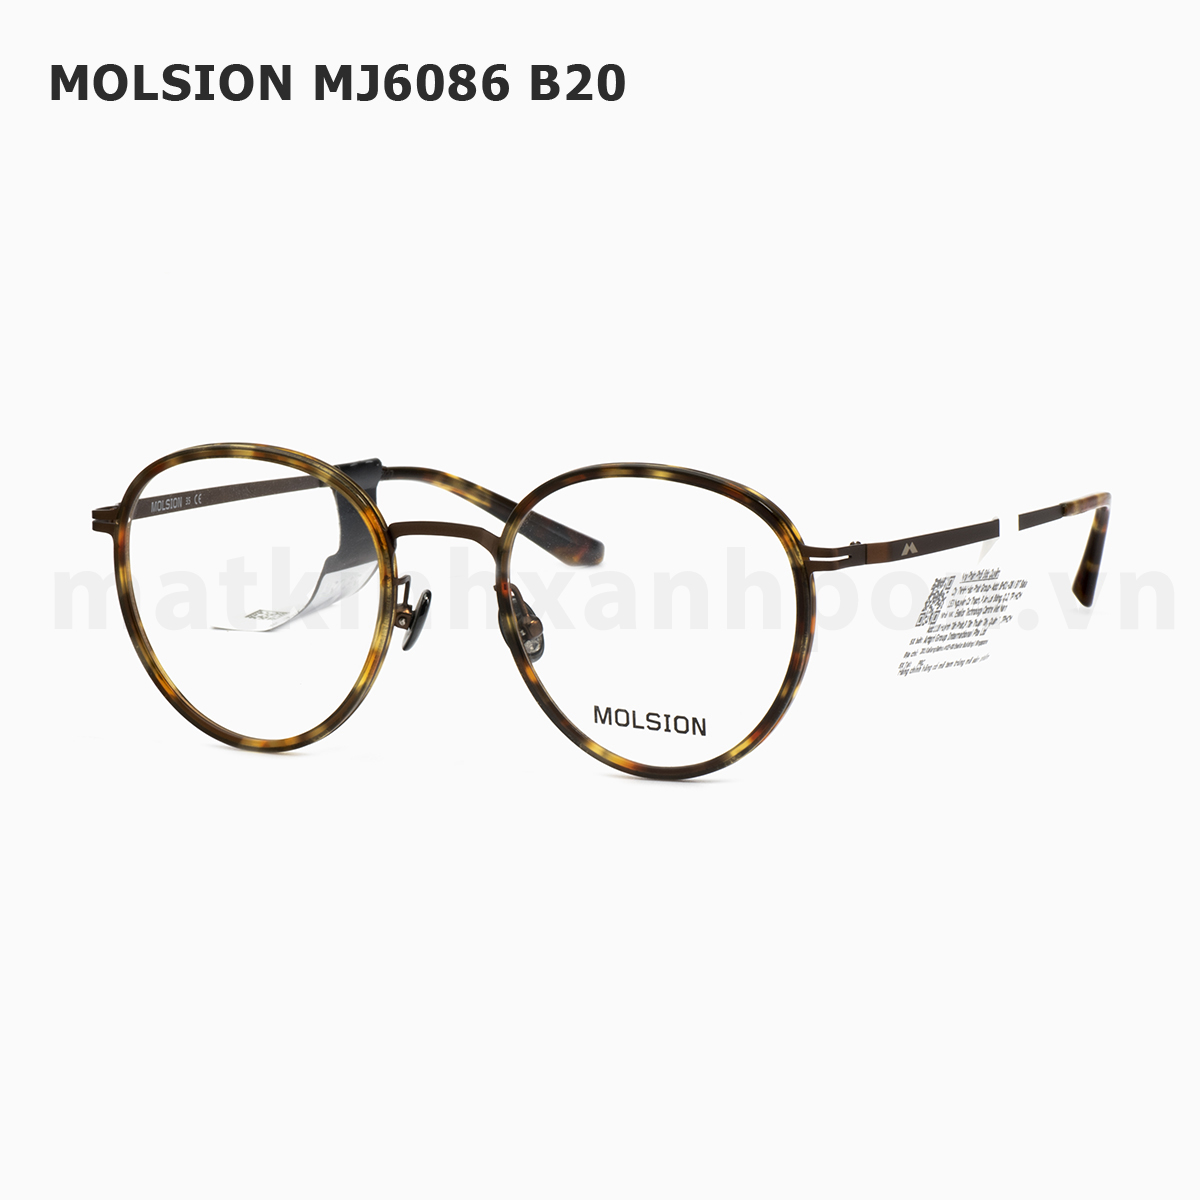 Molsion MJ6086 B20